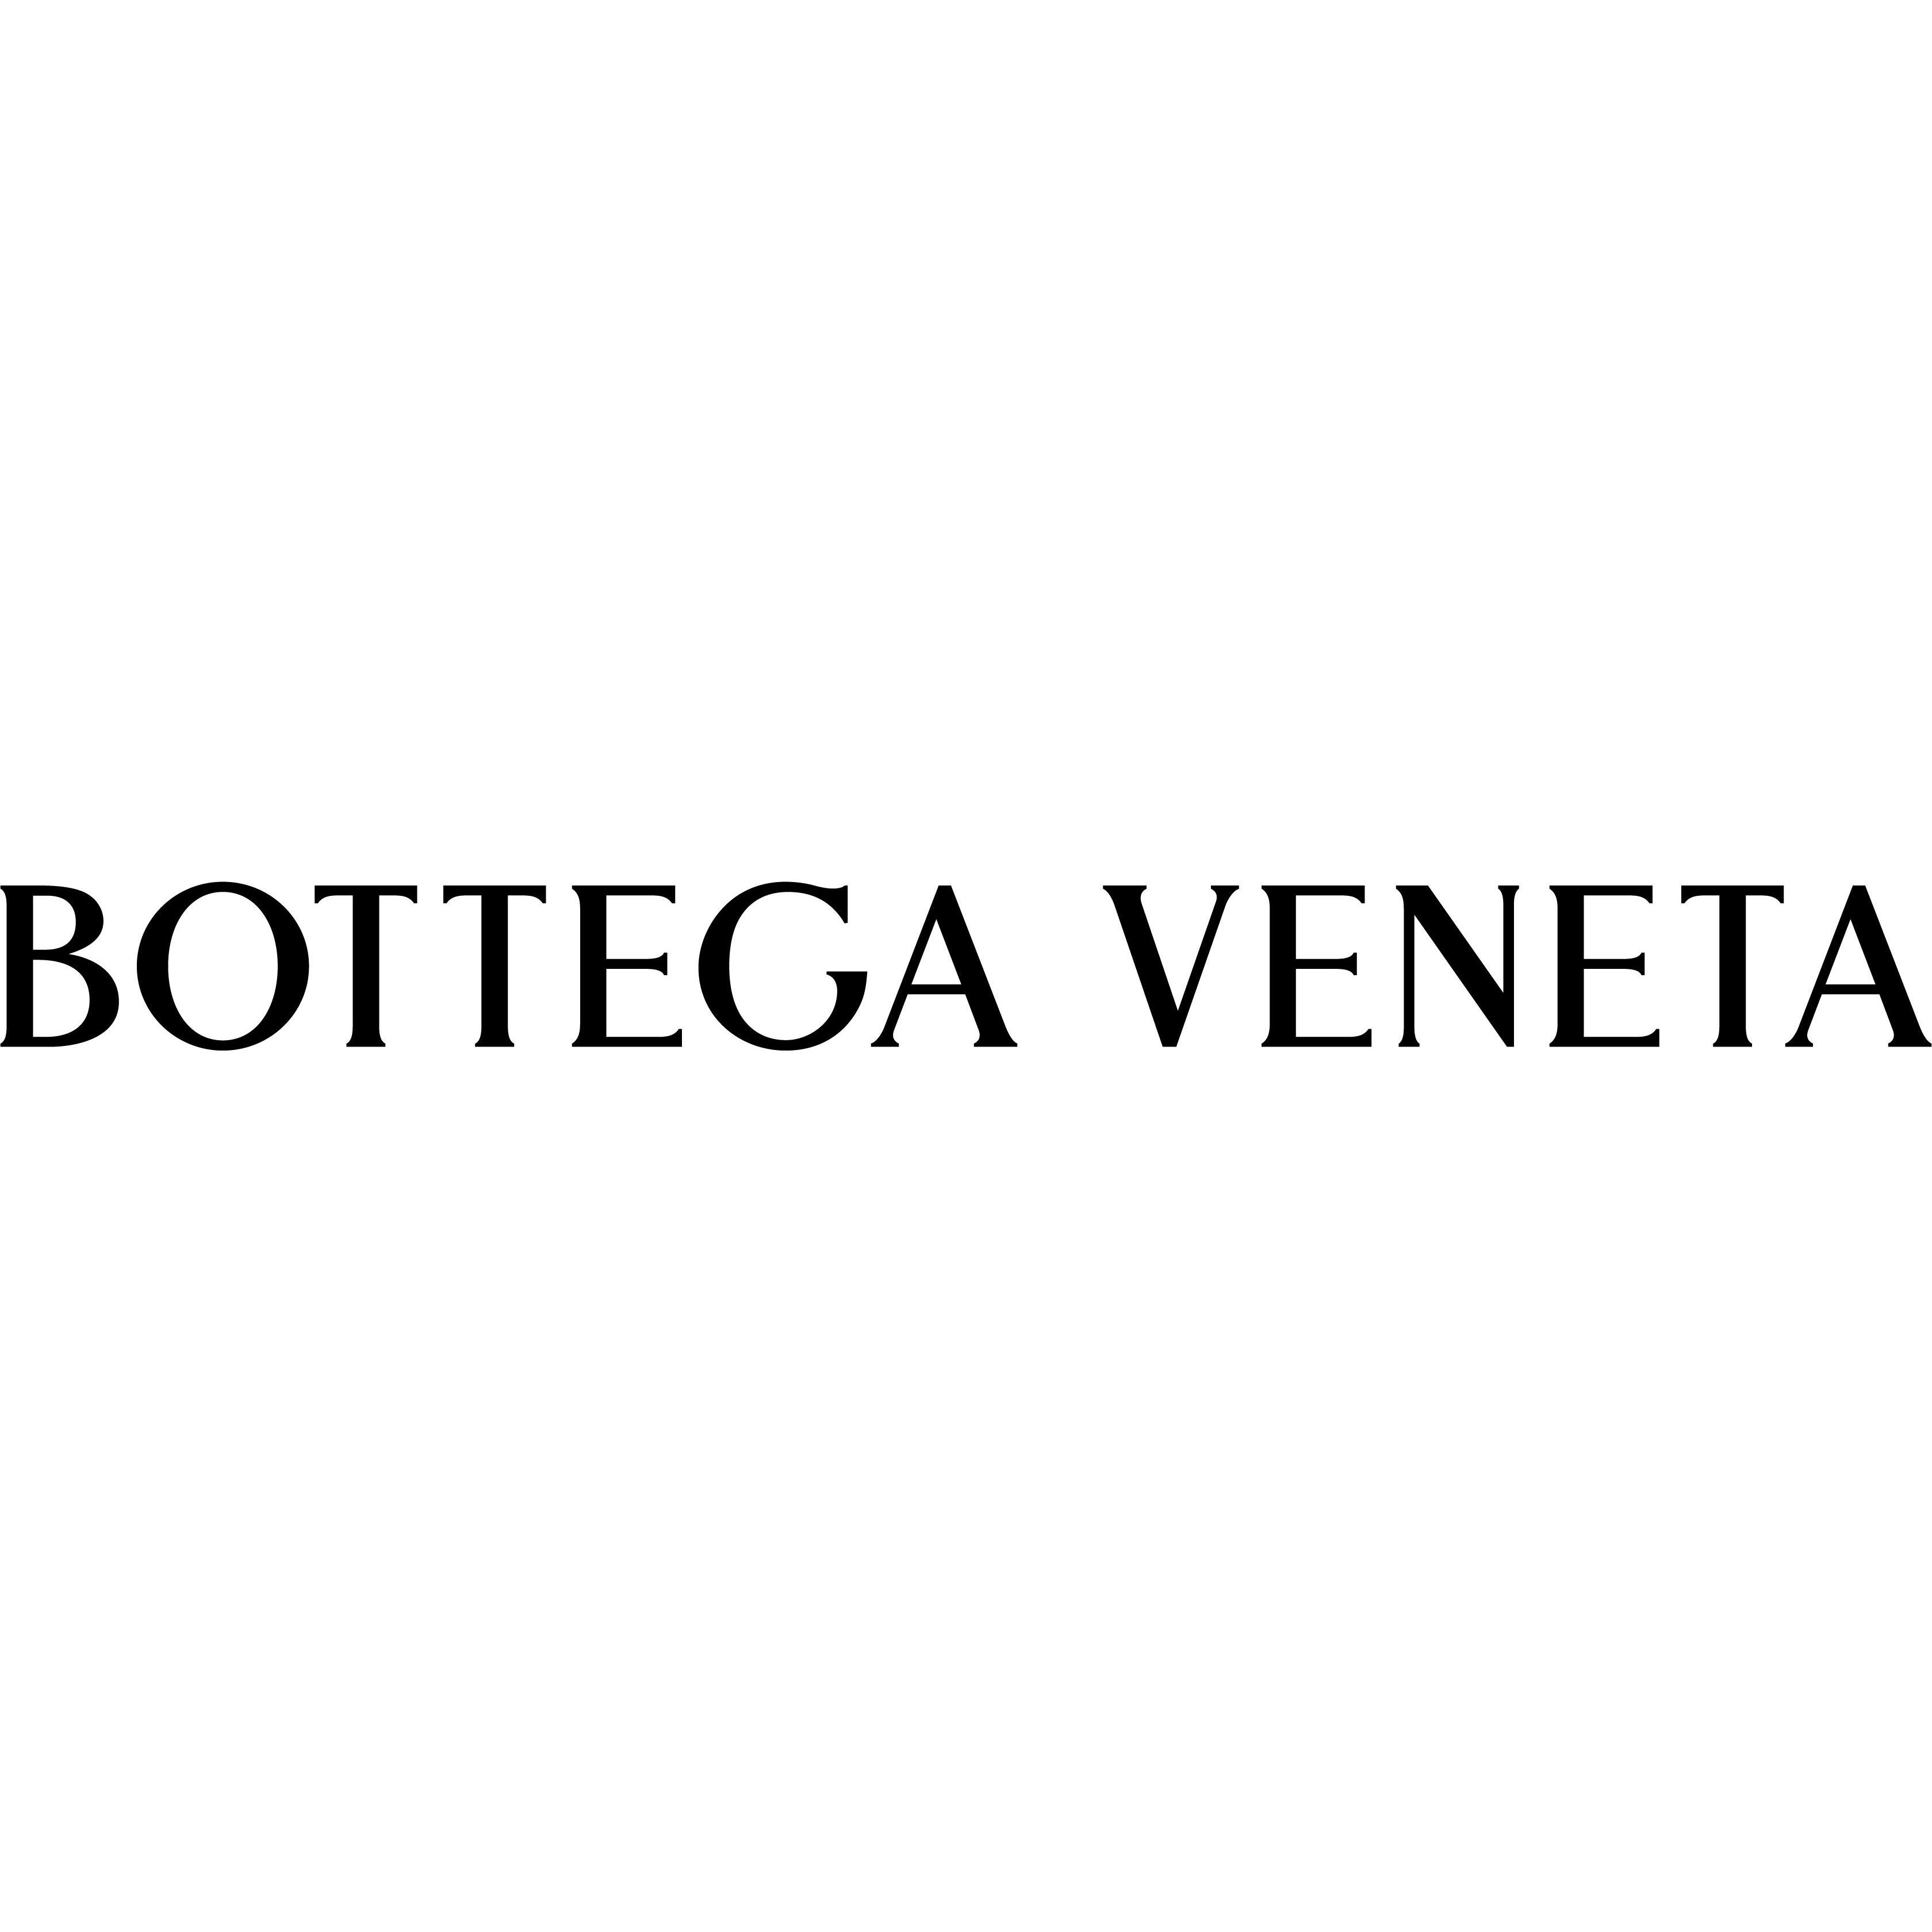 Bottega Veneta Stuttgart Breuninger in Stuttgart - Logo